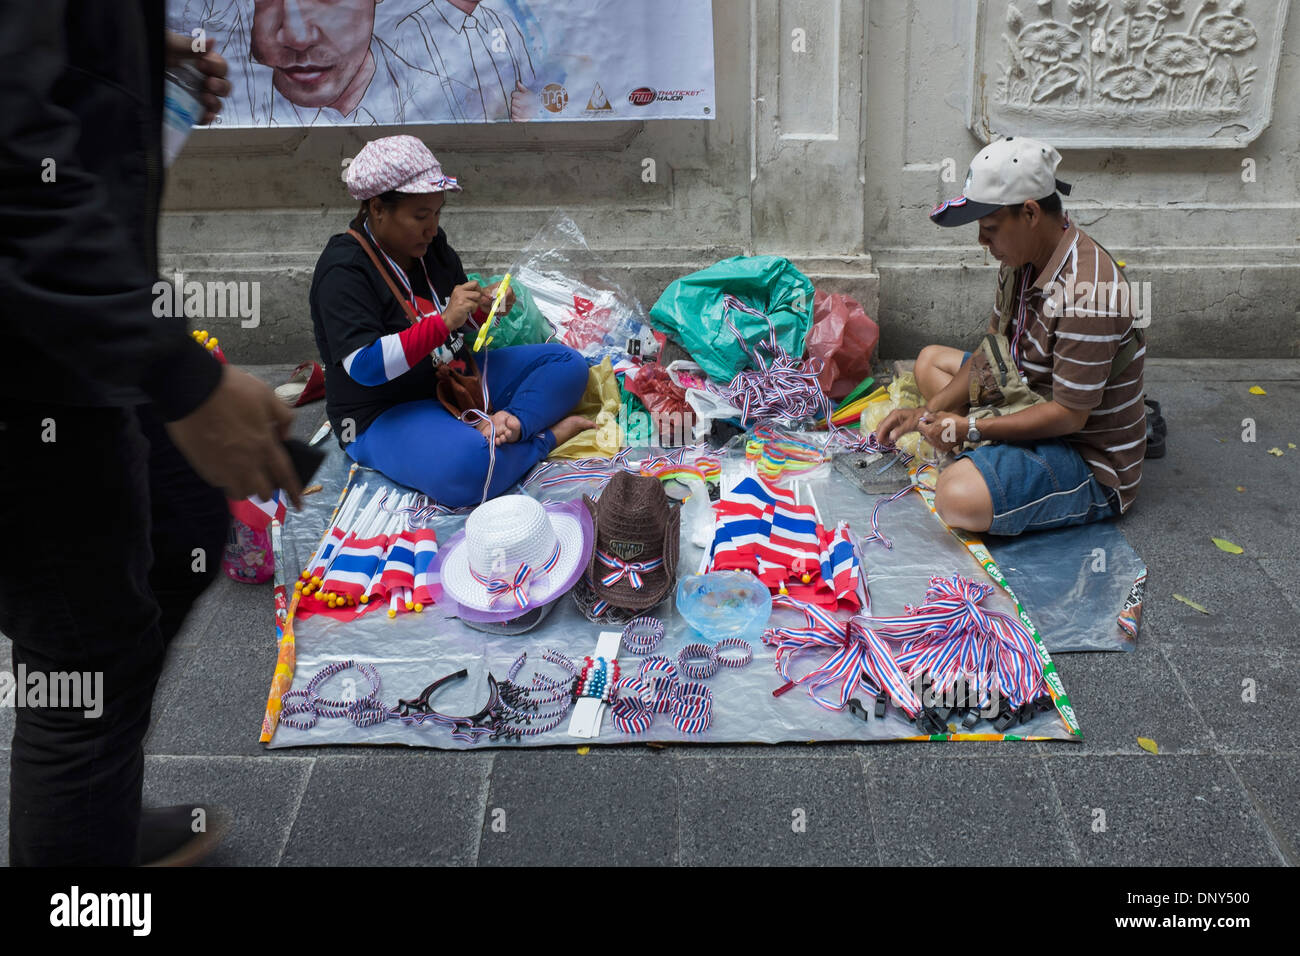 La vendita di memorabilia nazionalista sulle strade di Bangkok durante i disordini politici Foto Stock